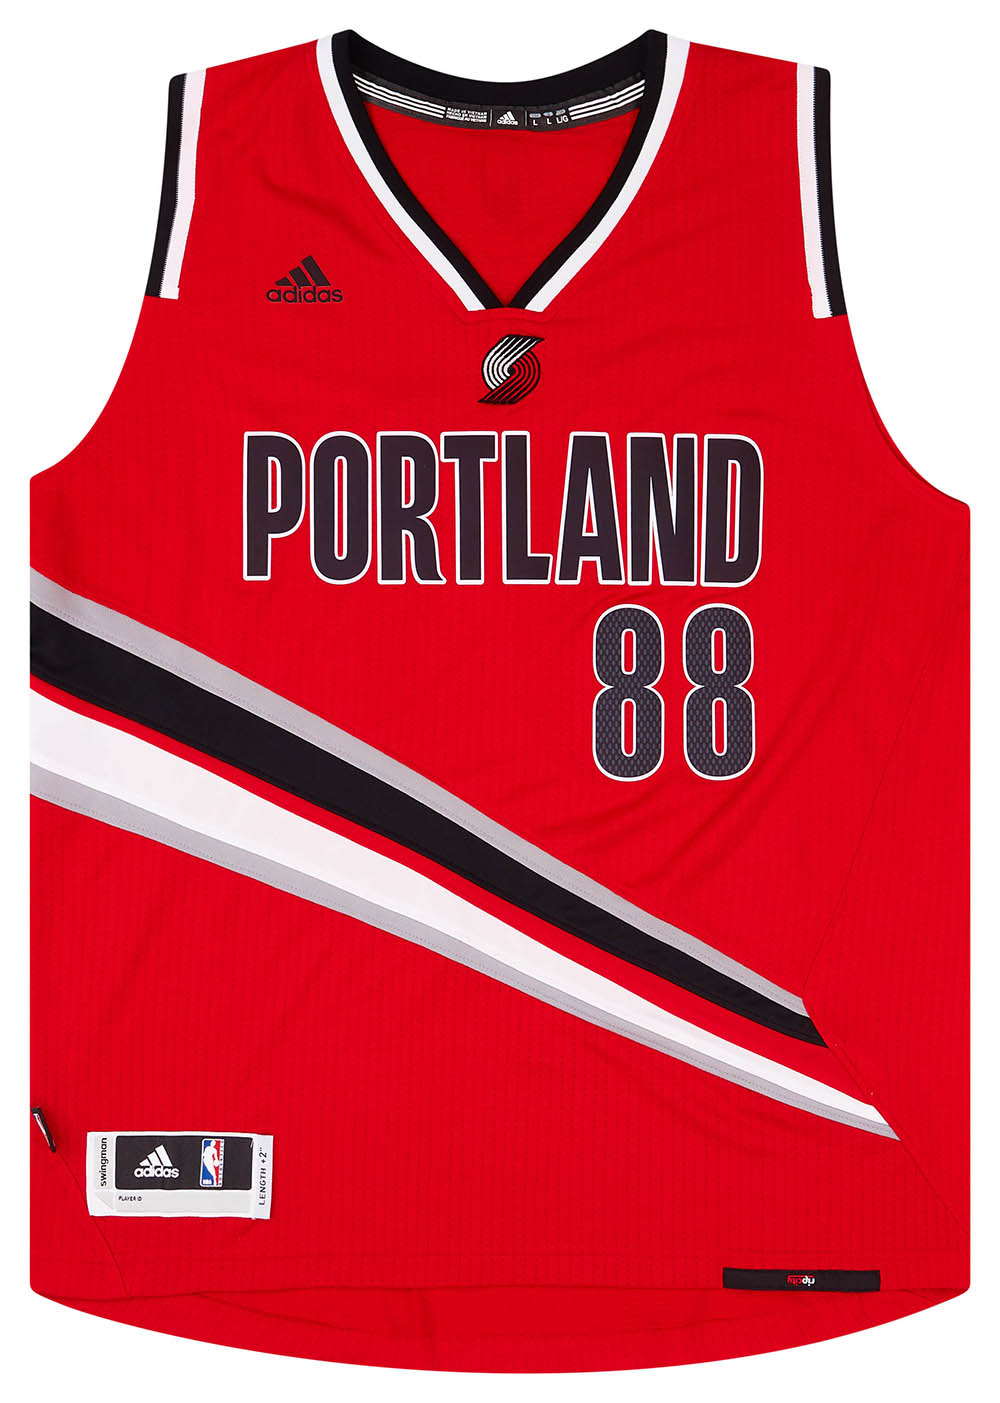 Nicolas Batum Portland Trailblazers Adidas NBA replica jersey youth sz XL